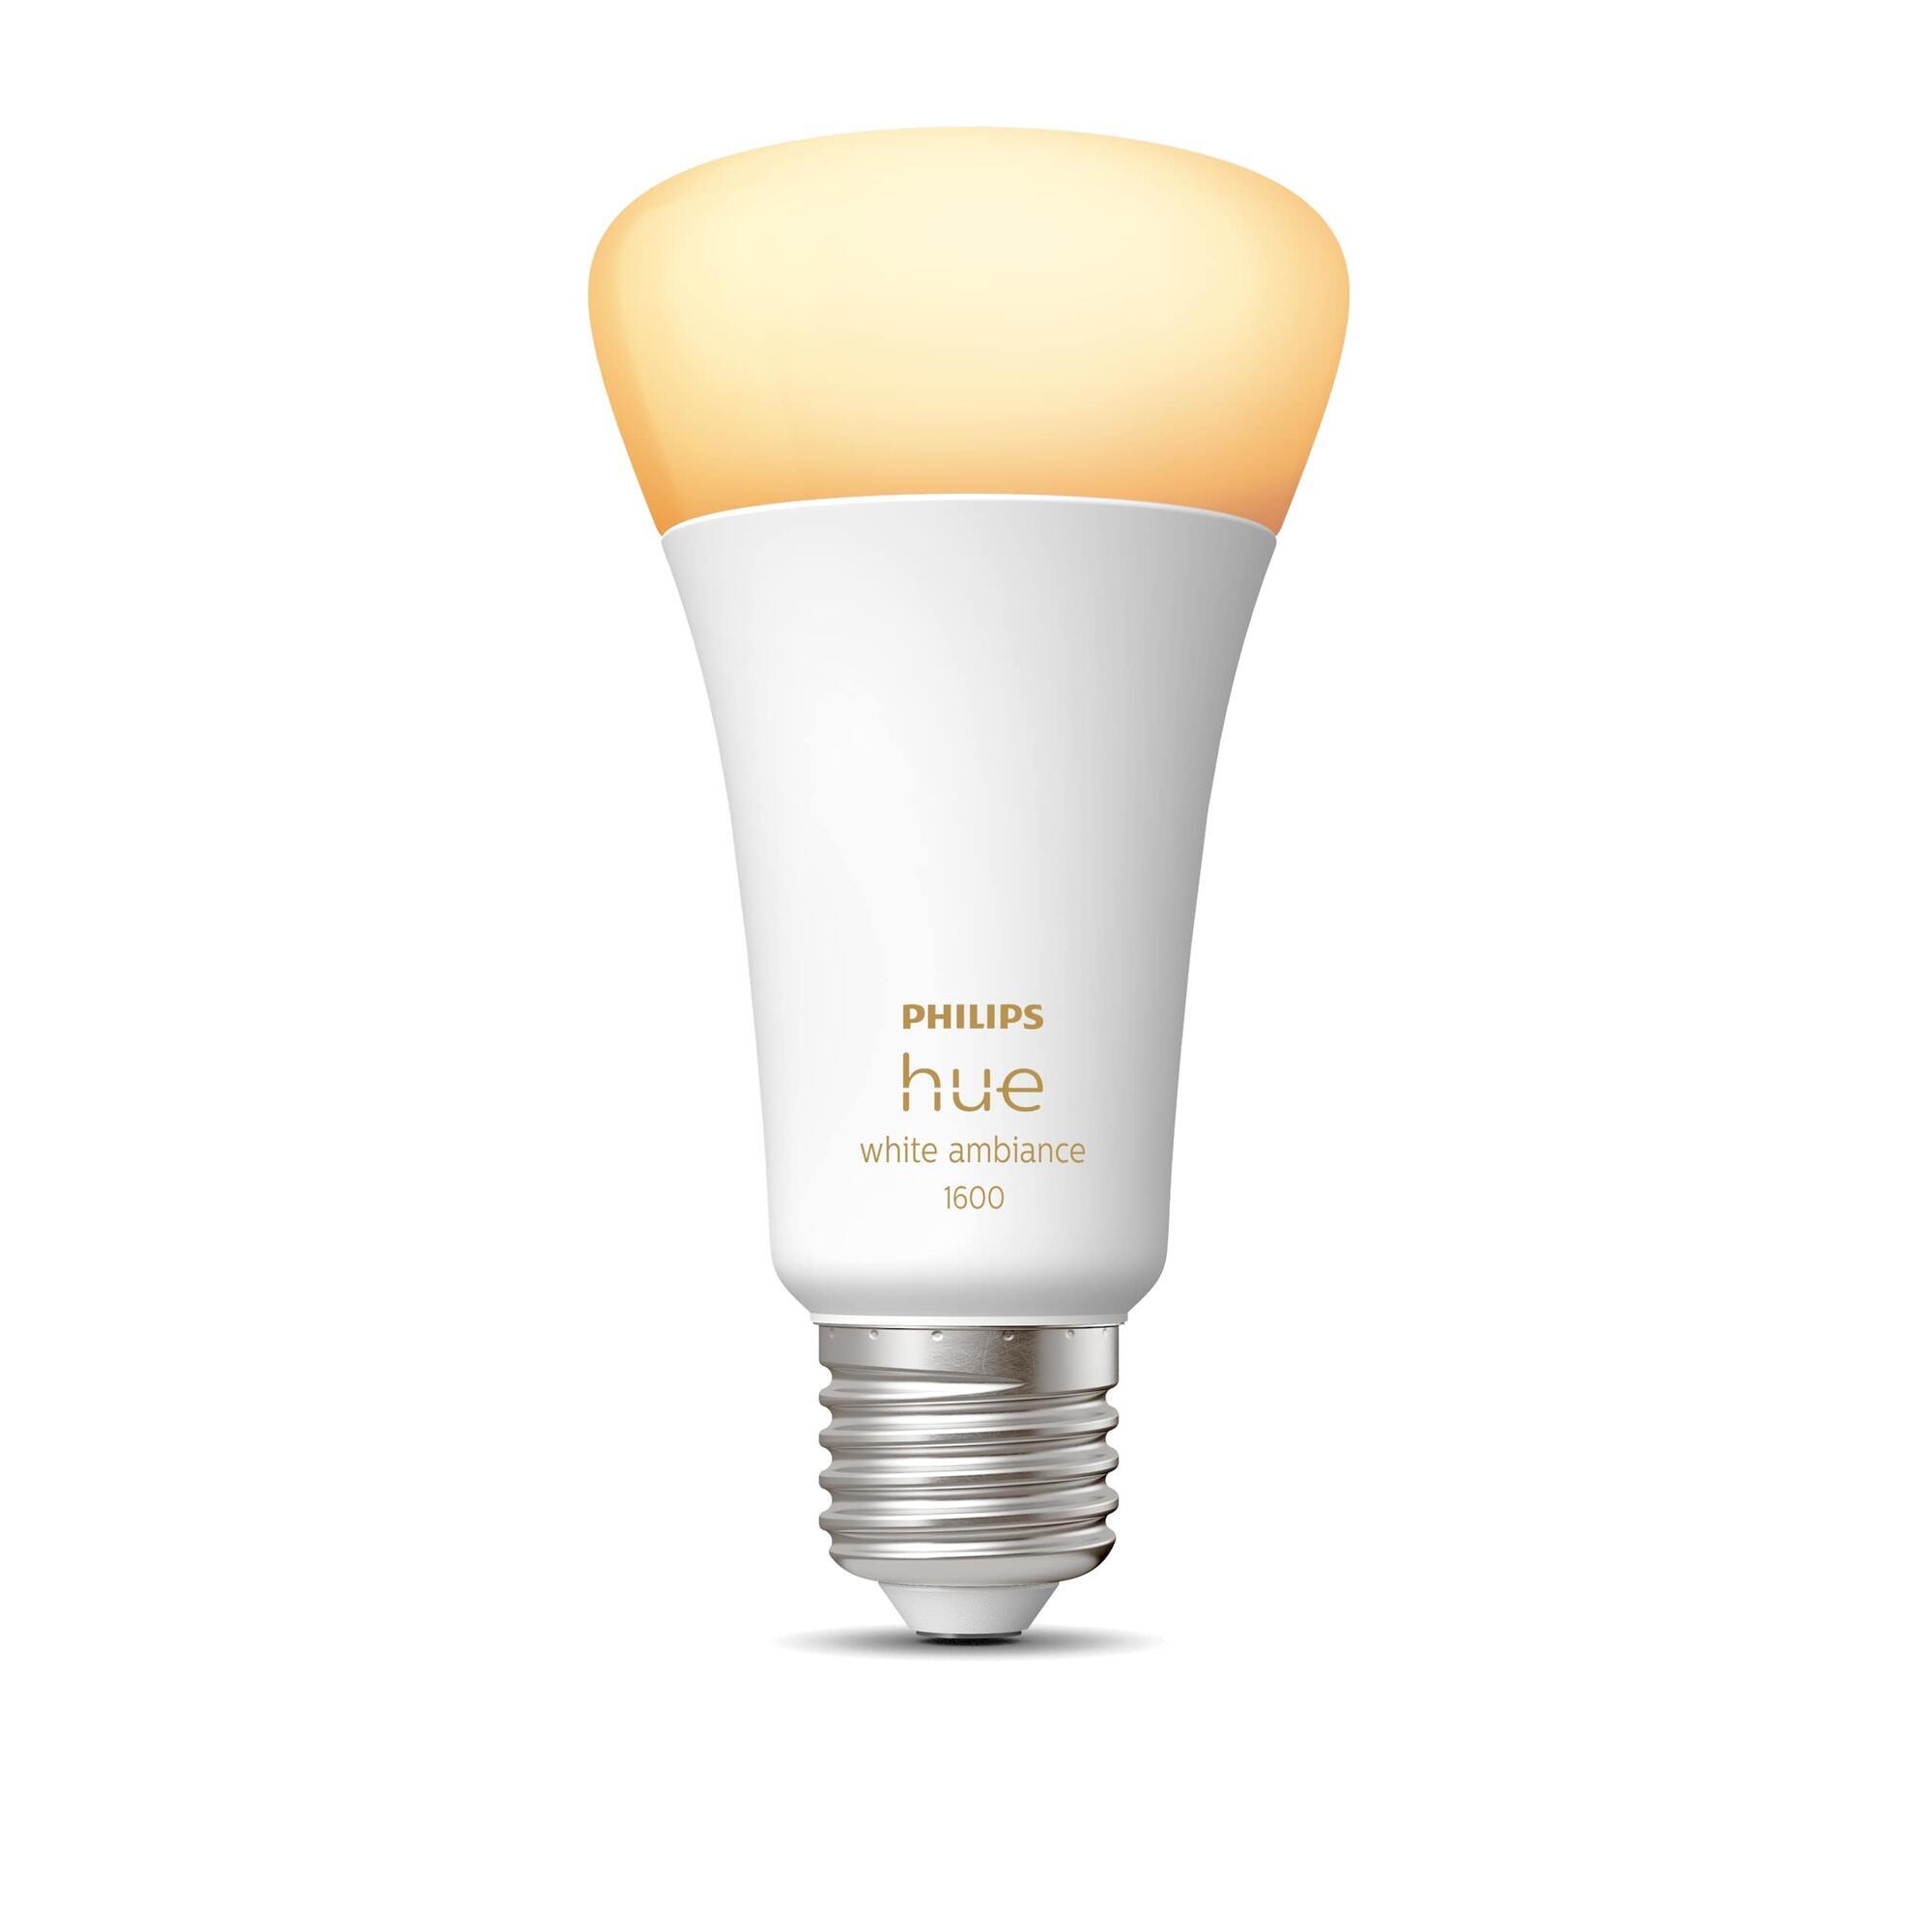 Philips, pack de 6 ampoules LED E27, 100W, blanc froid non